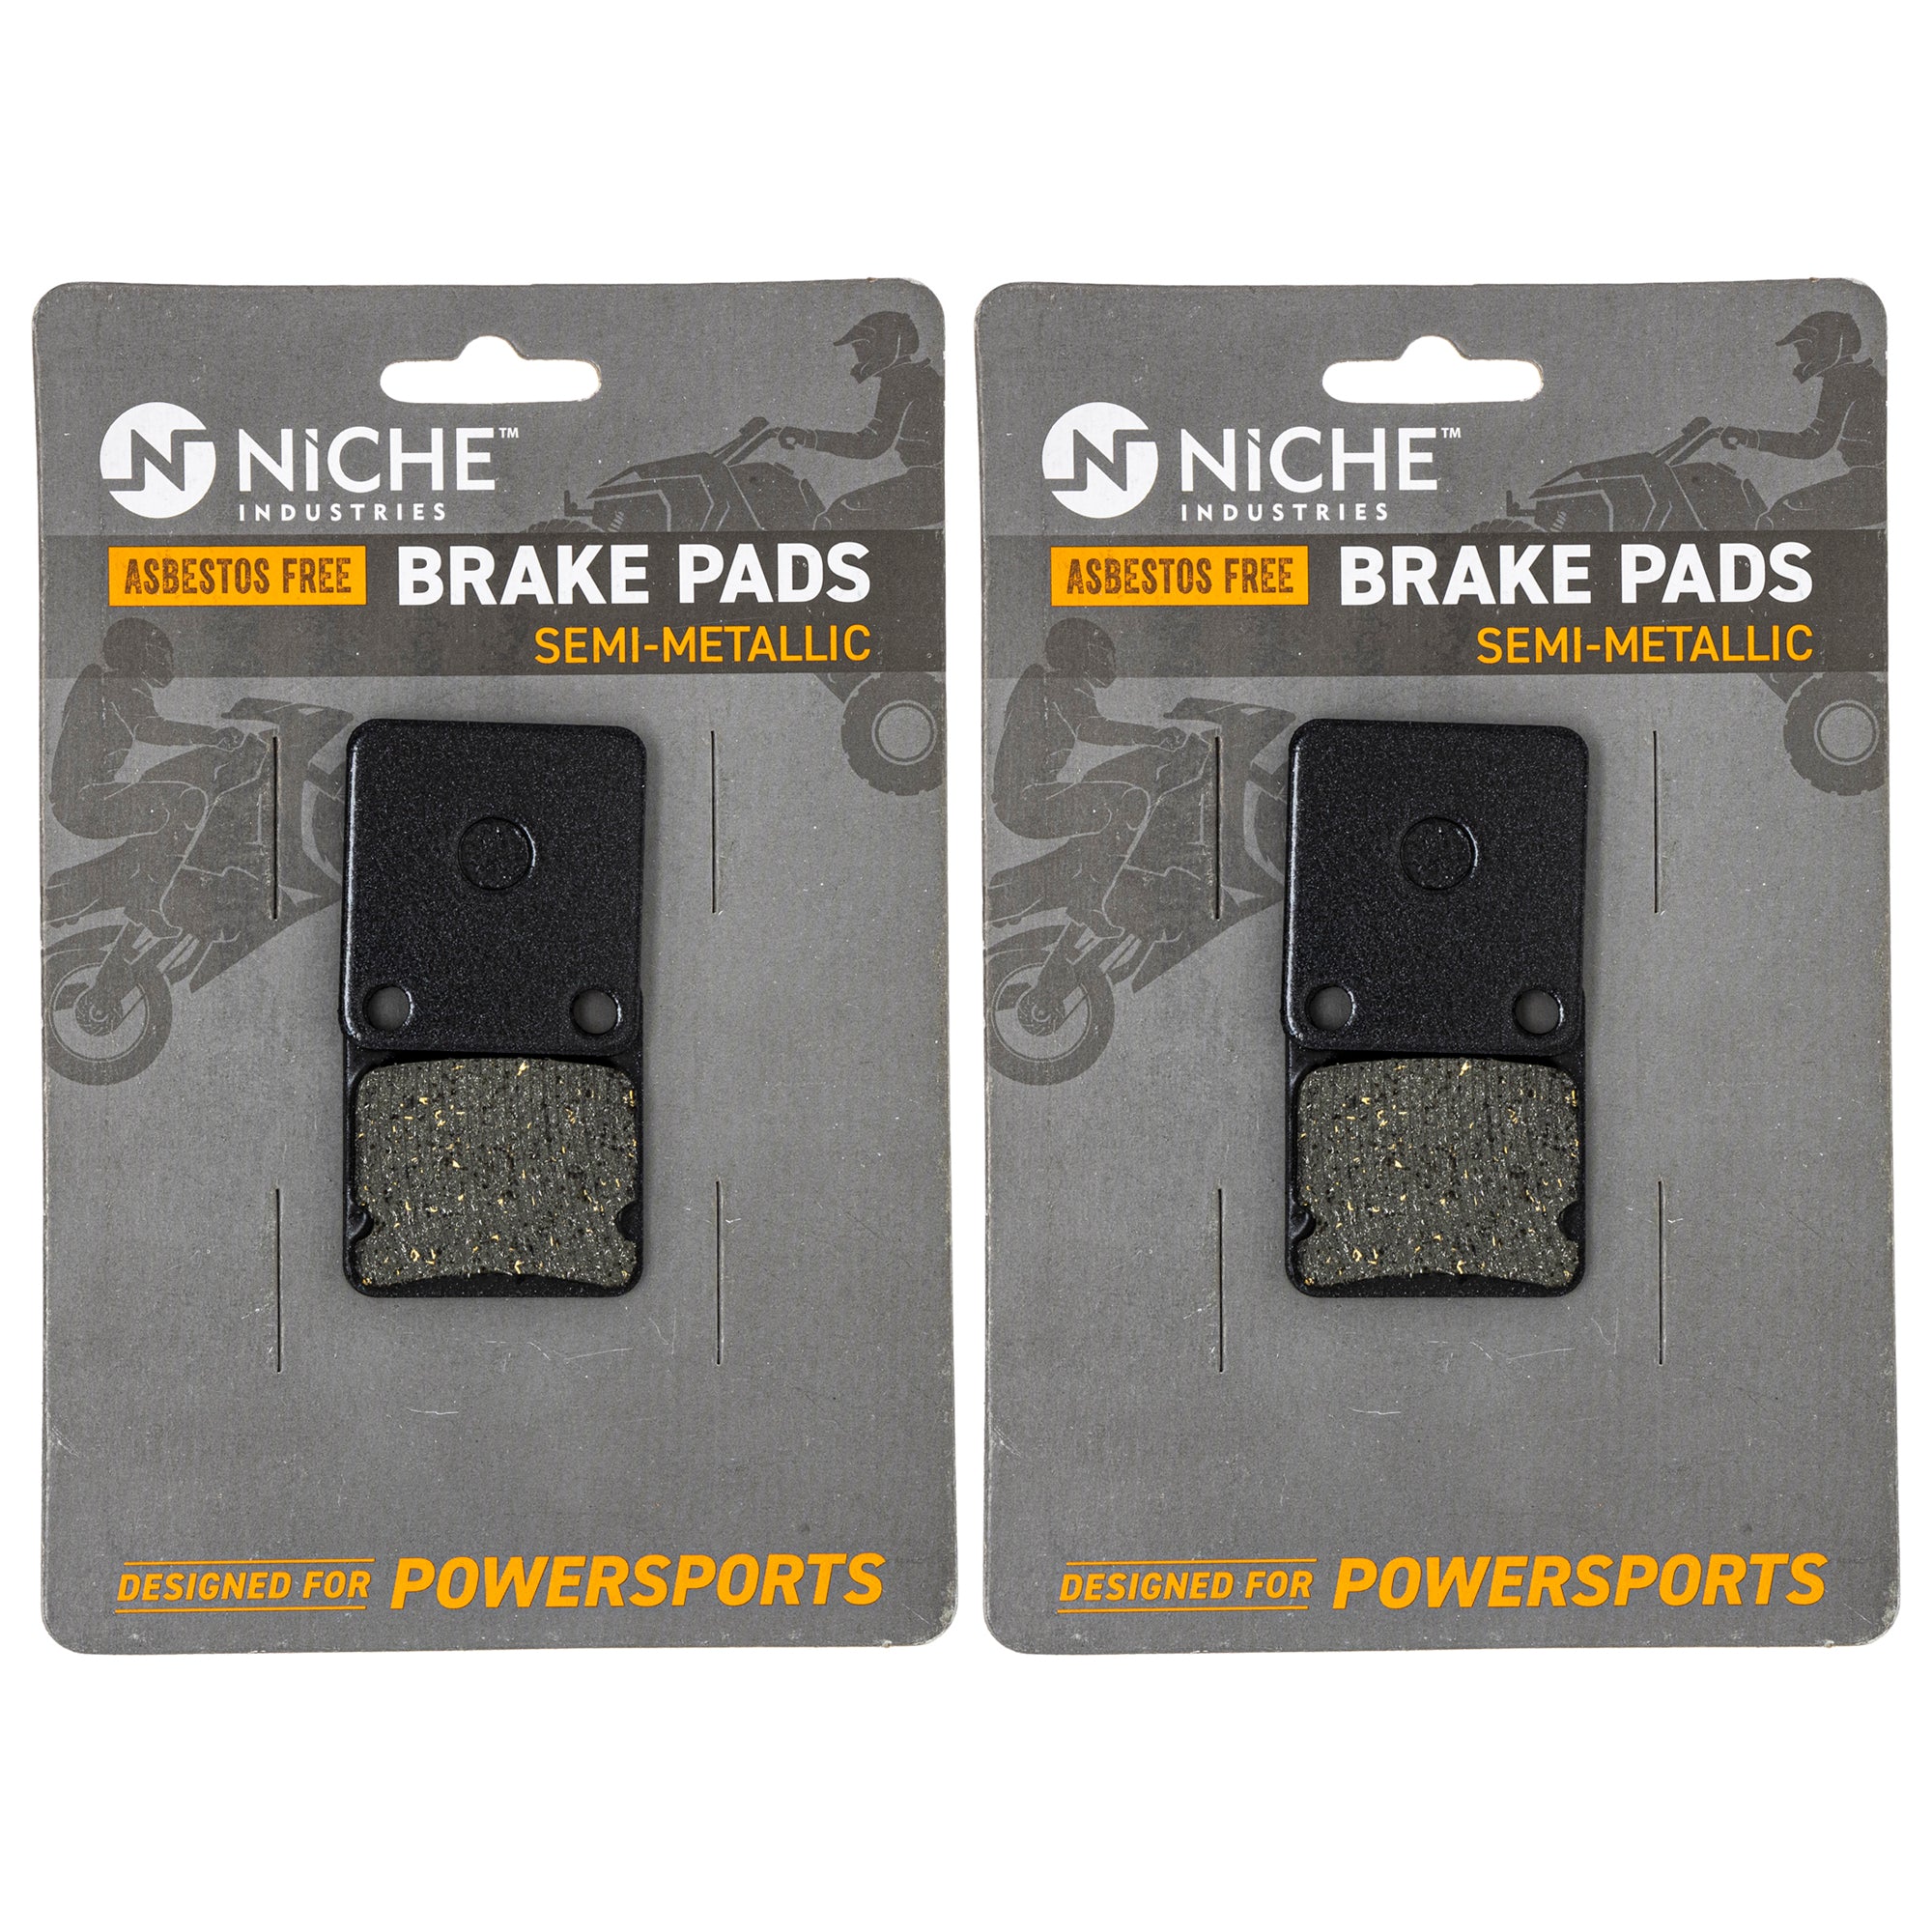 NICHE MK1001500 Brake Pad Set for Suzuki Vinson 59101-38850